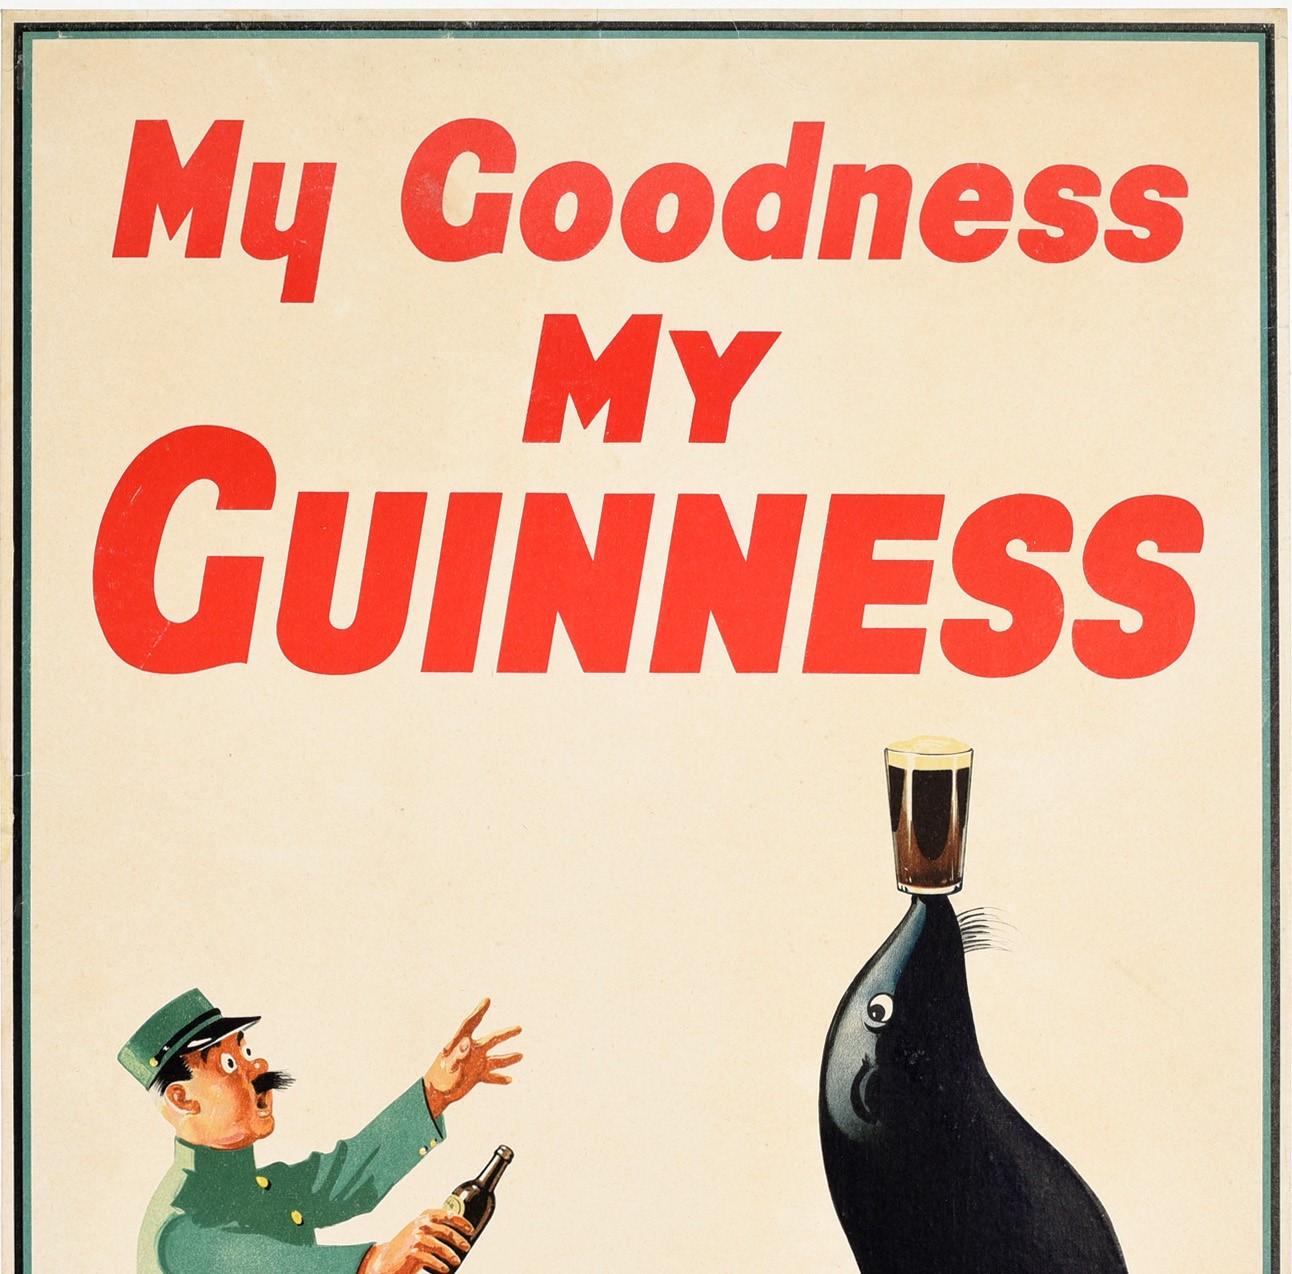 Affiche publicitaire vintage originale pour la boisson emblématique Guinness, la bière stout irlandaise - My Goodness My Guinness - présentant une image amusante d'un gardien de zoo surpris en uniforme courant avec sa bouteille de Guinness vers une